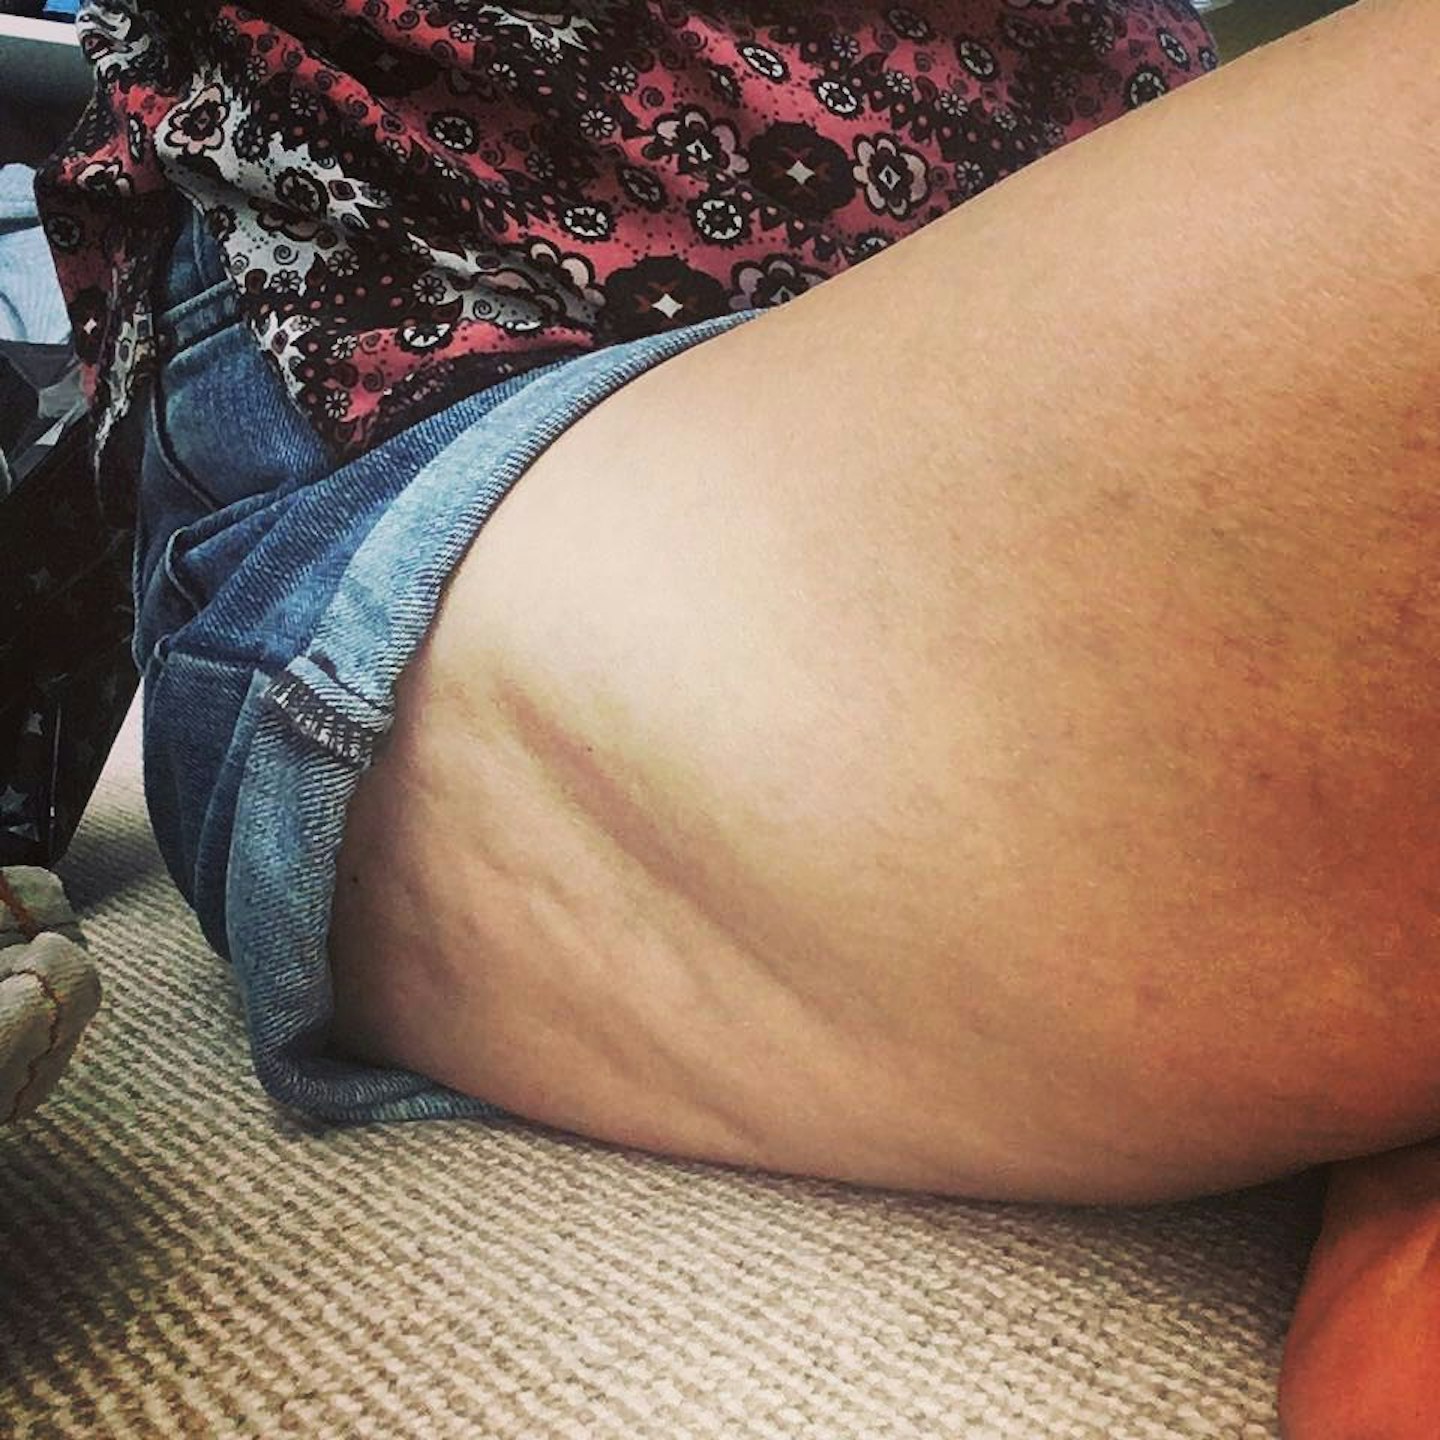 unmumsy-mum-posts-honest-pic-celulite-instagram-followers-praise-perfect-legs